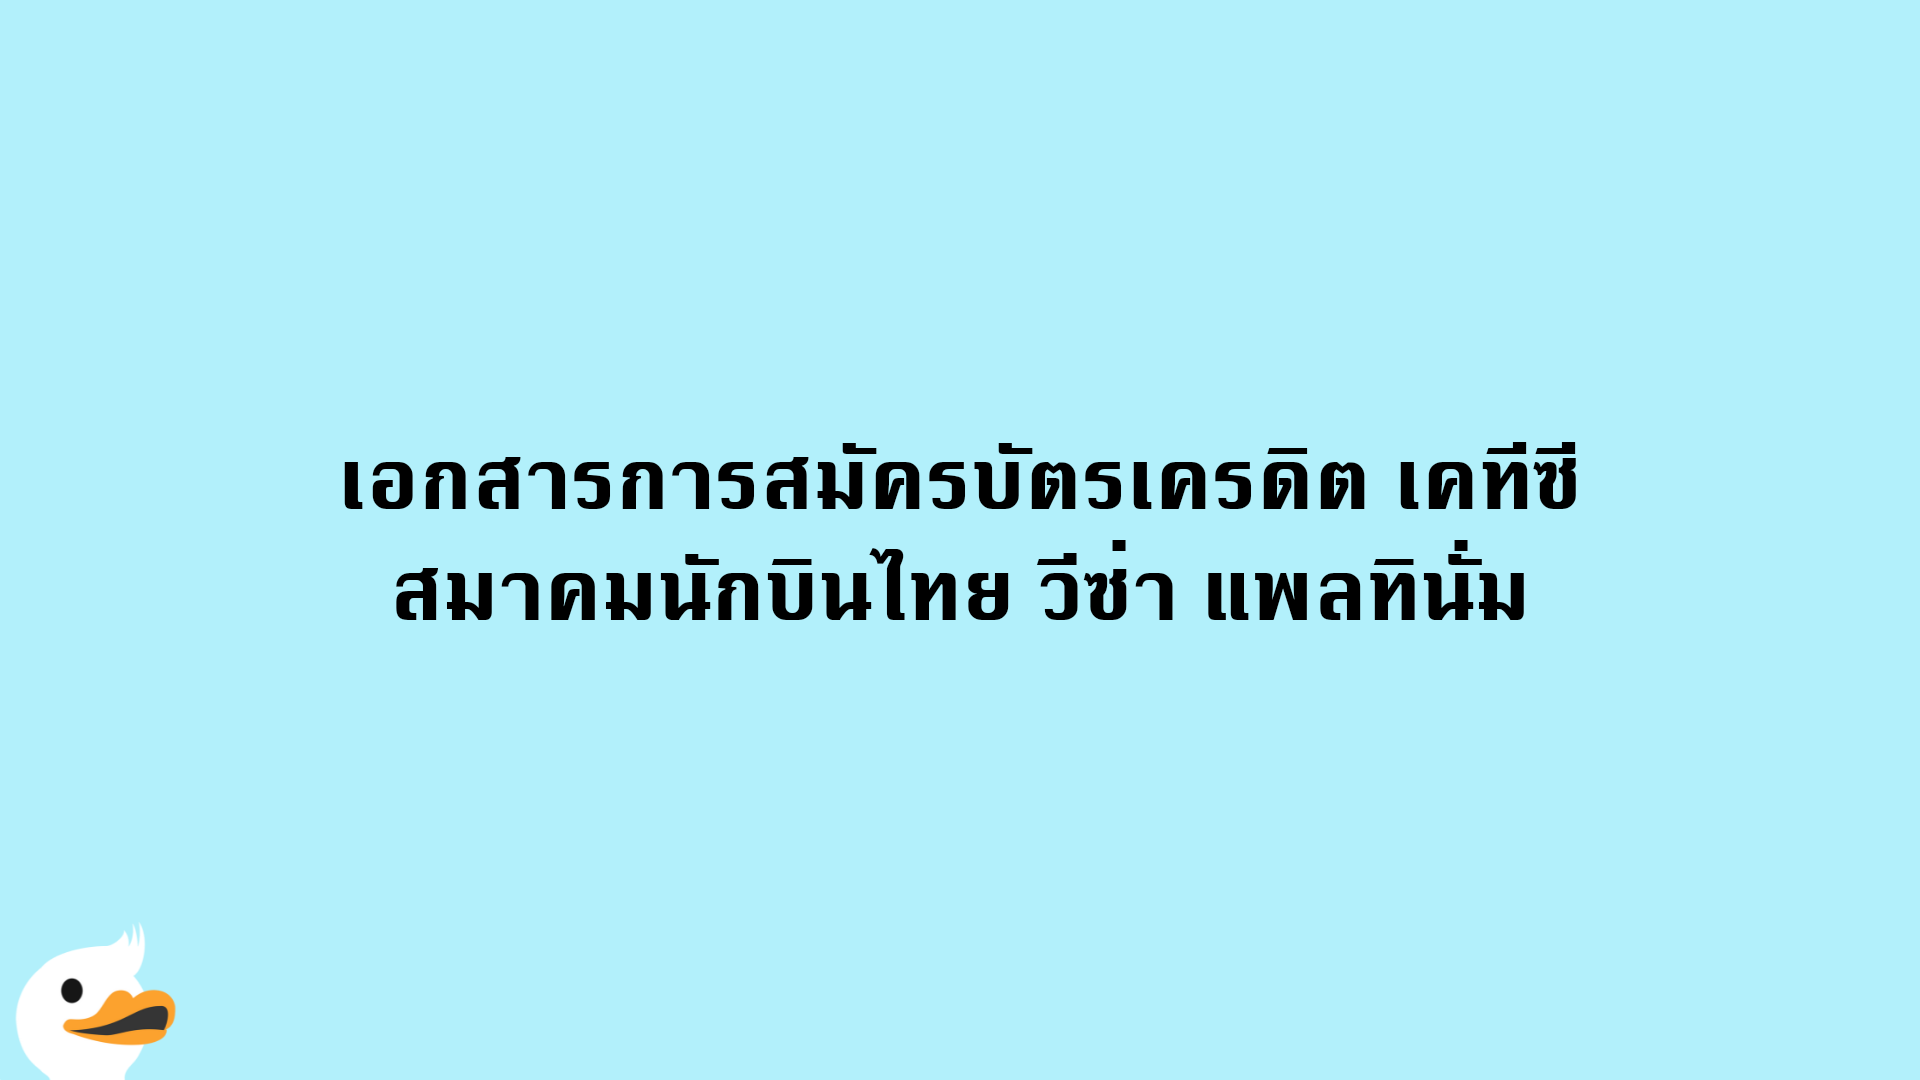 เอกสารการสมัครบัตรเครดิต เคทีซี สมาคมนักบินไทย วีซ่า แพลทินั่ม